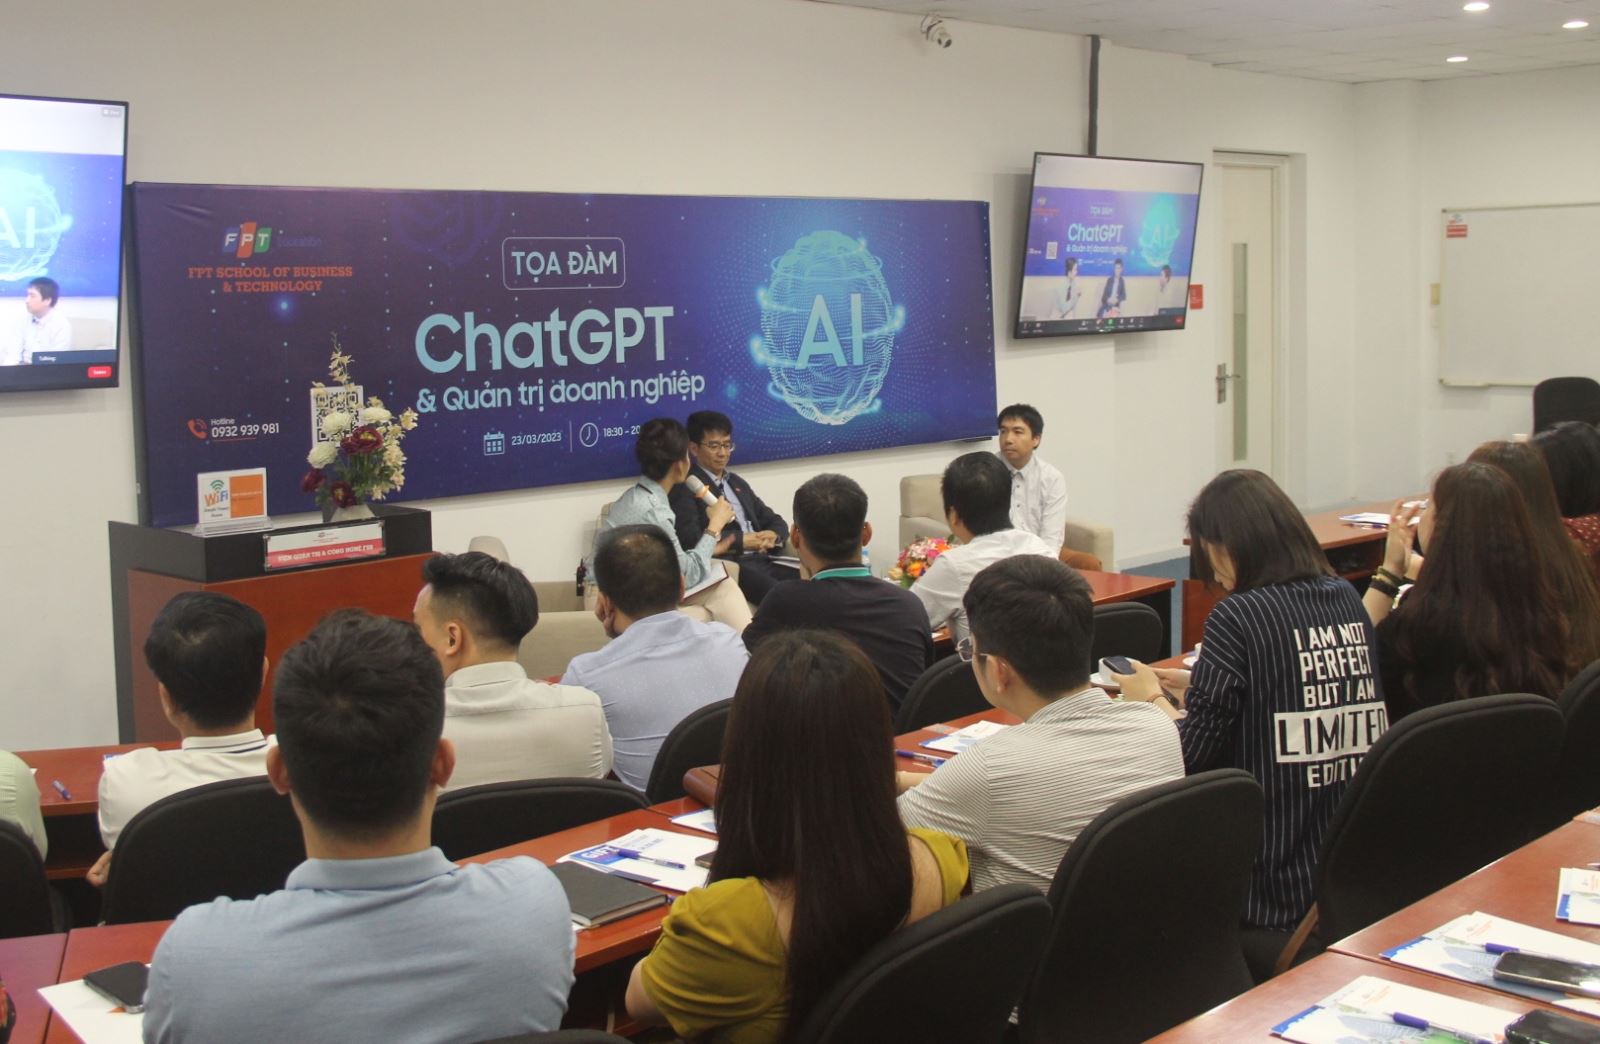 Các diễn giả giải đáp câu hỏi xoay quanh bài toán ứng dụng ChatGPT cho doanh nghiệp